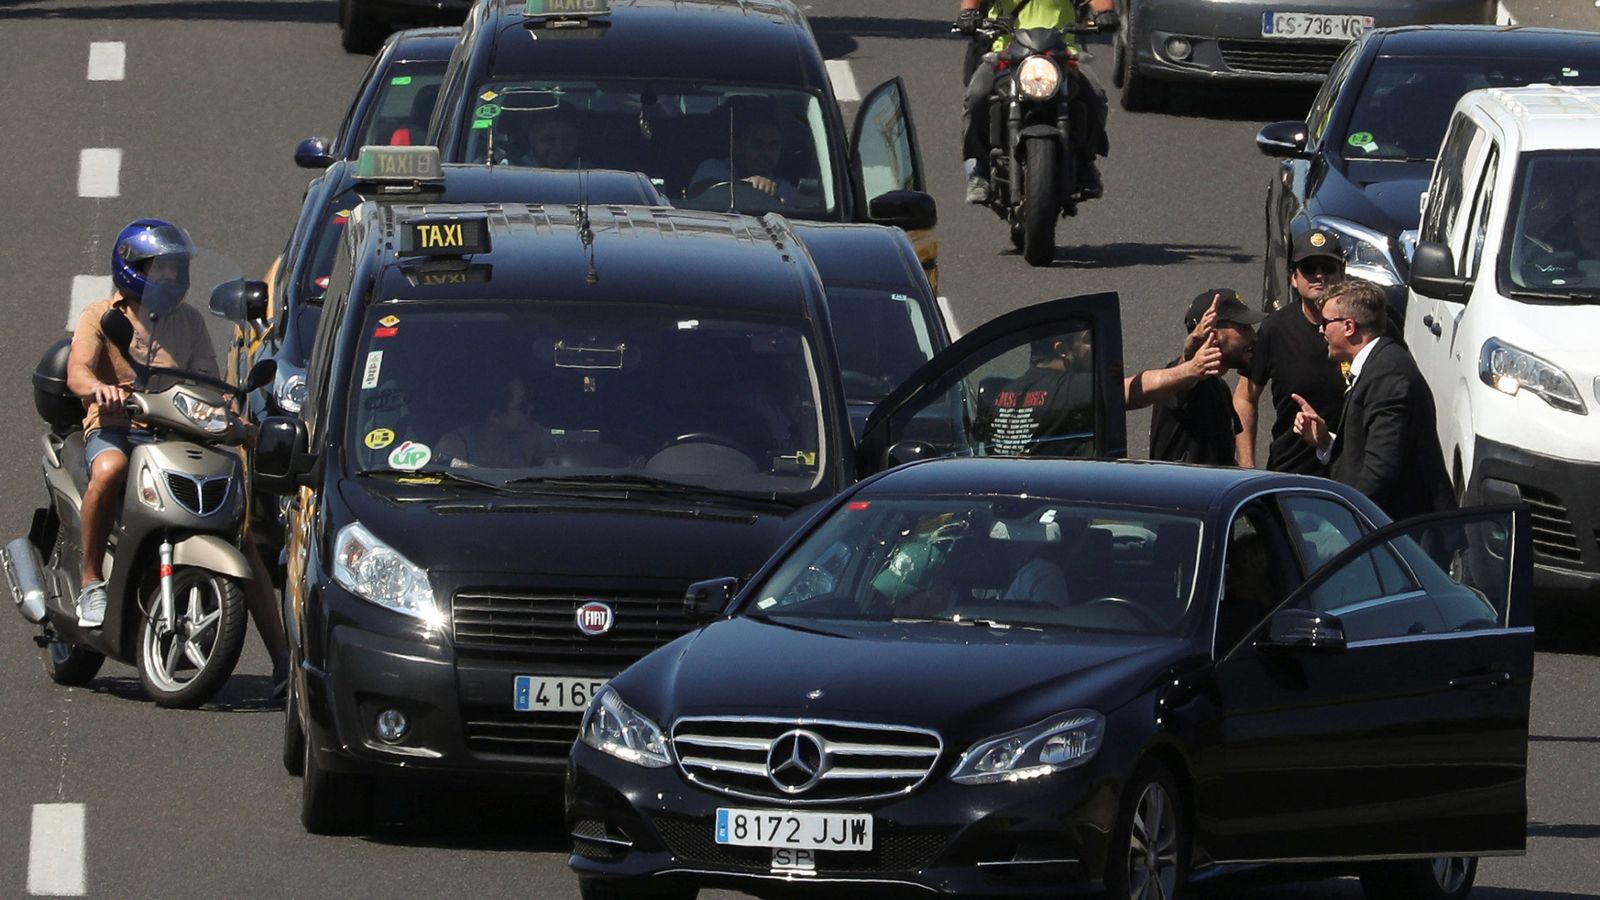 Foto: Unos taxistas discuten en plena calle con el conductor de una VTC en Barcelona. (Reuters)